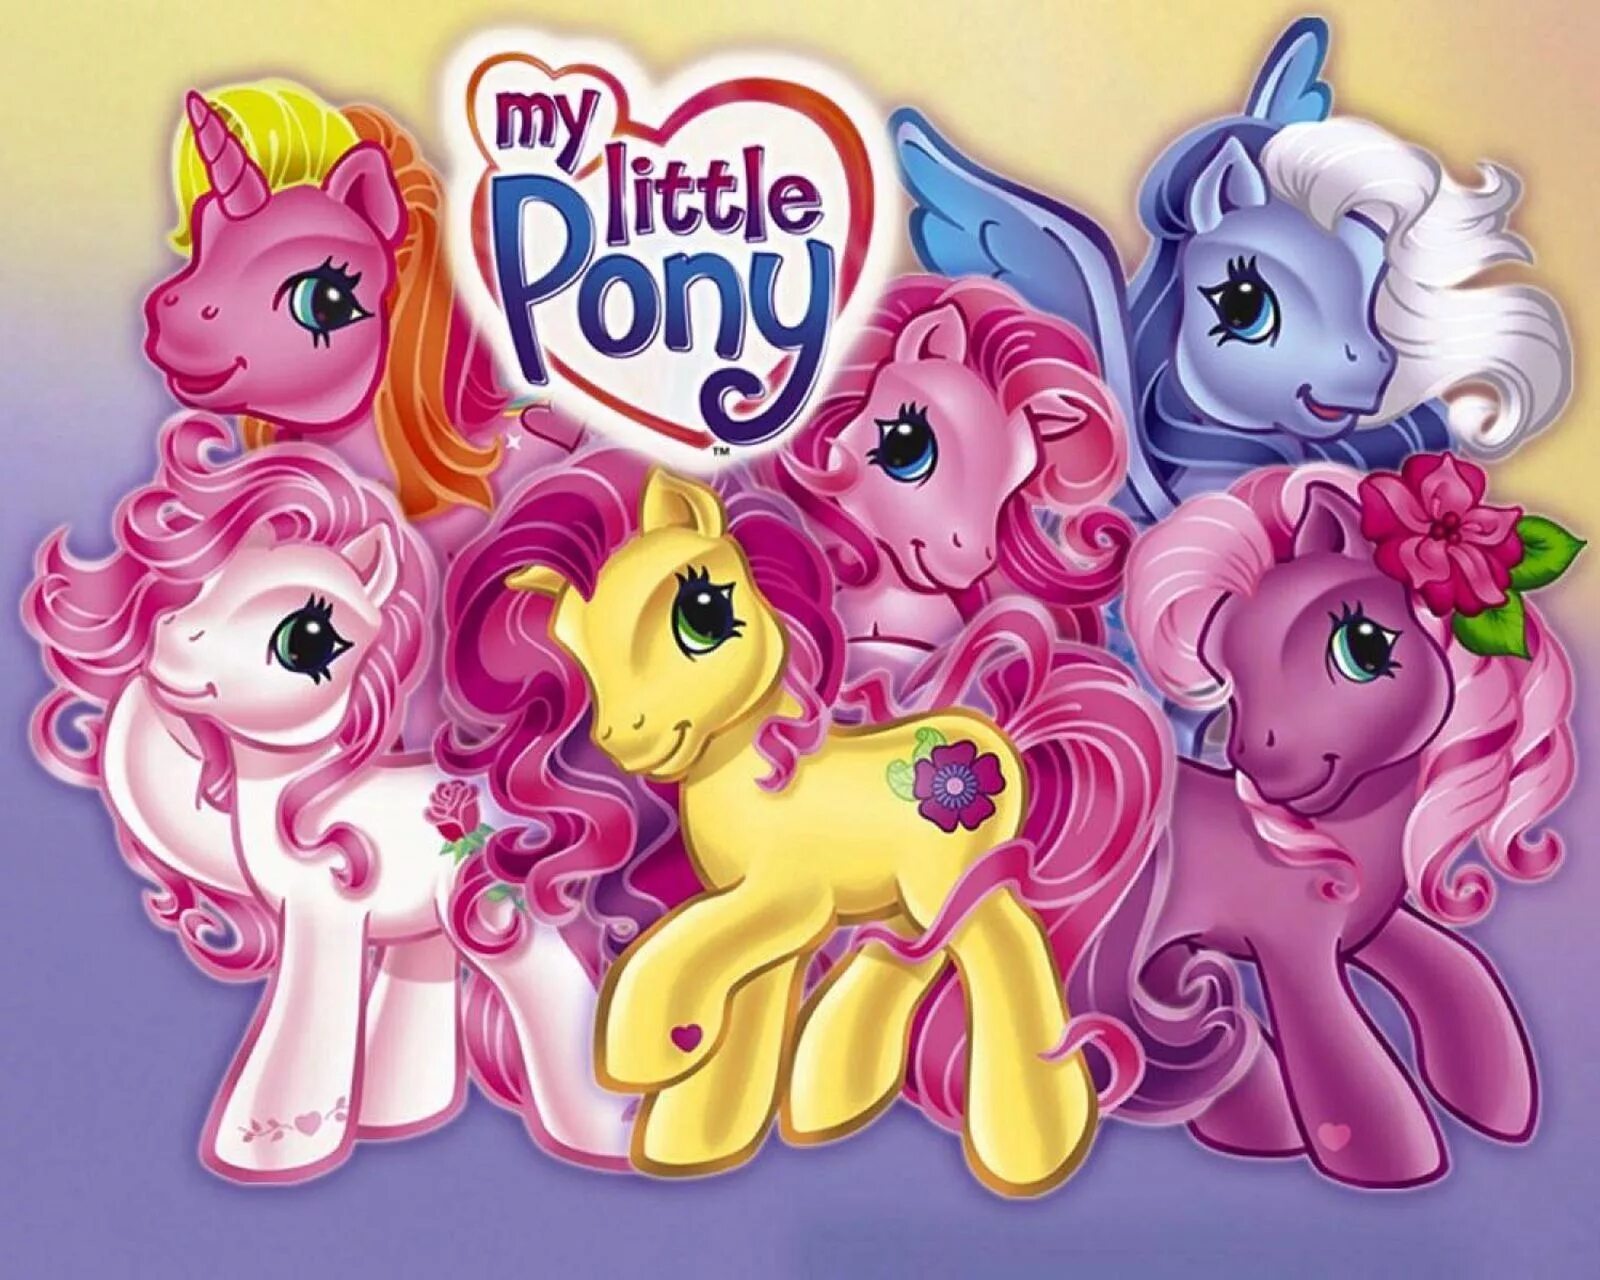 Лошадки литл пони. My little Pony g3. My little Pony Ponyville g3 игрушки.